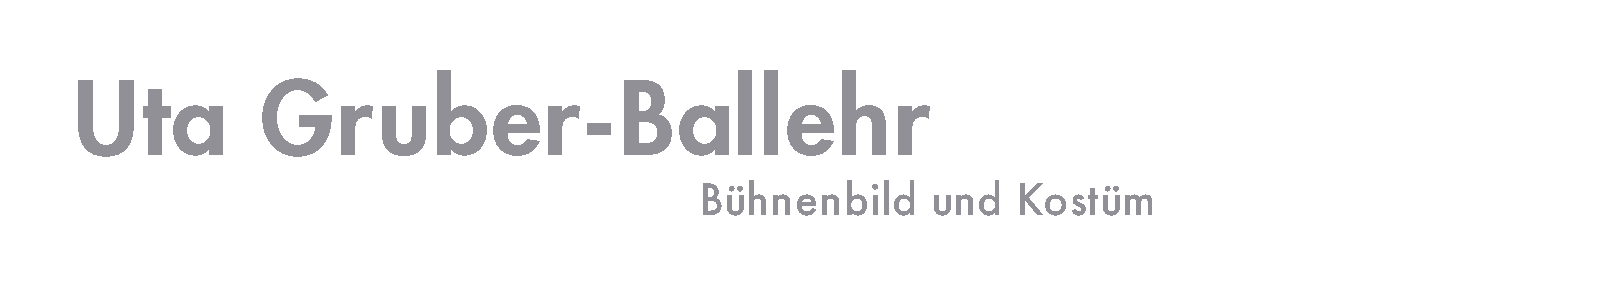 Uta Gruber-Ballehr - Bühnenbild und Kostüm